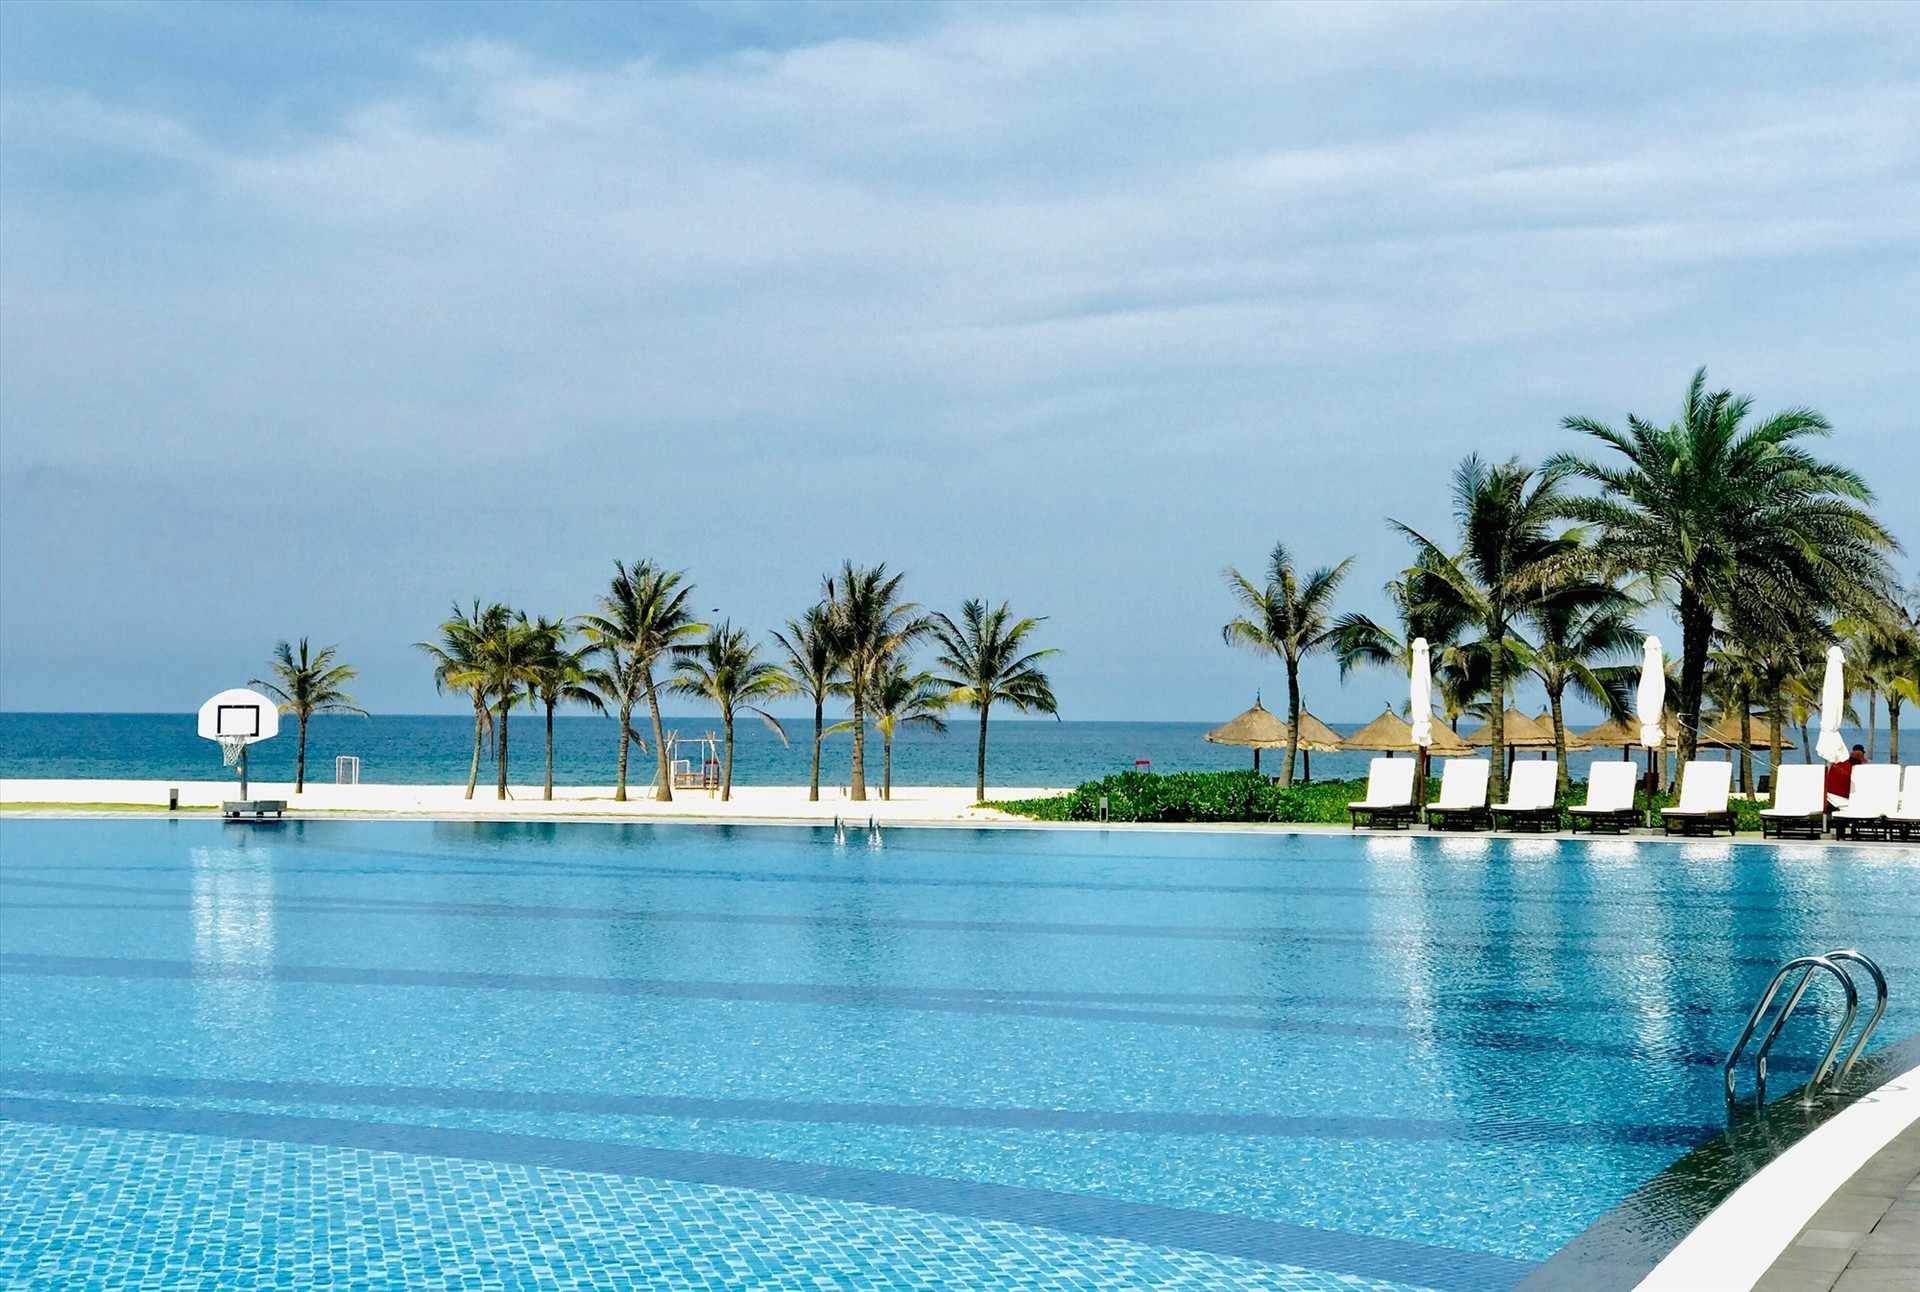 Khu nghỉ dưỡng Vinpearl Resort & Golf Nam Hội An là một trong các đơn vị được chọn thí điểm đón khách quốc tế trong tháng 11.2021. Ảnh: Q.T